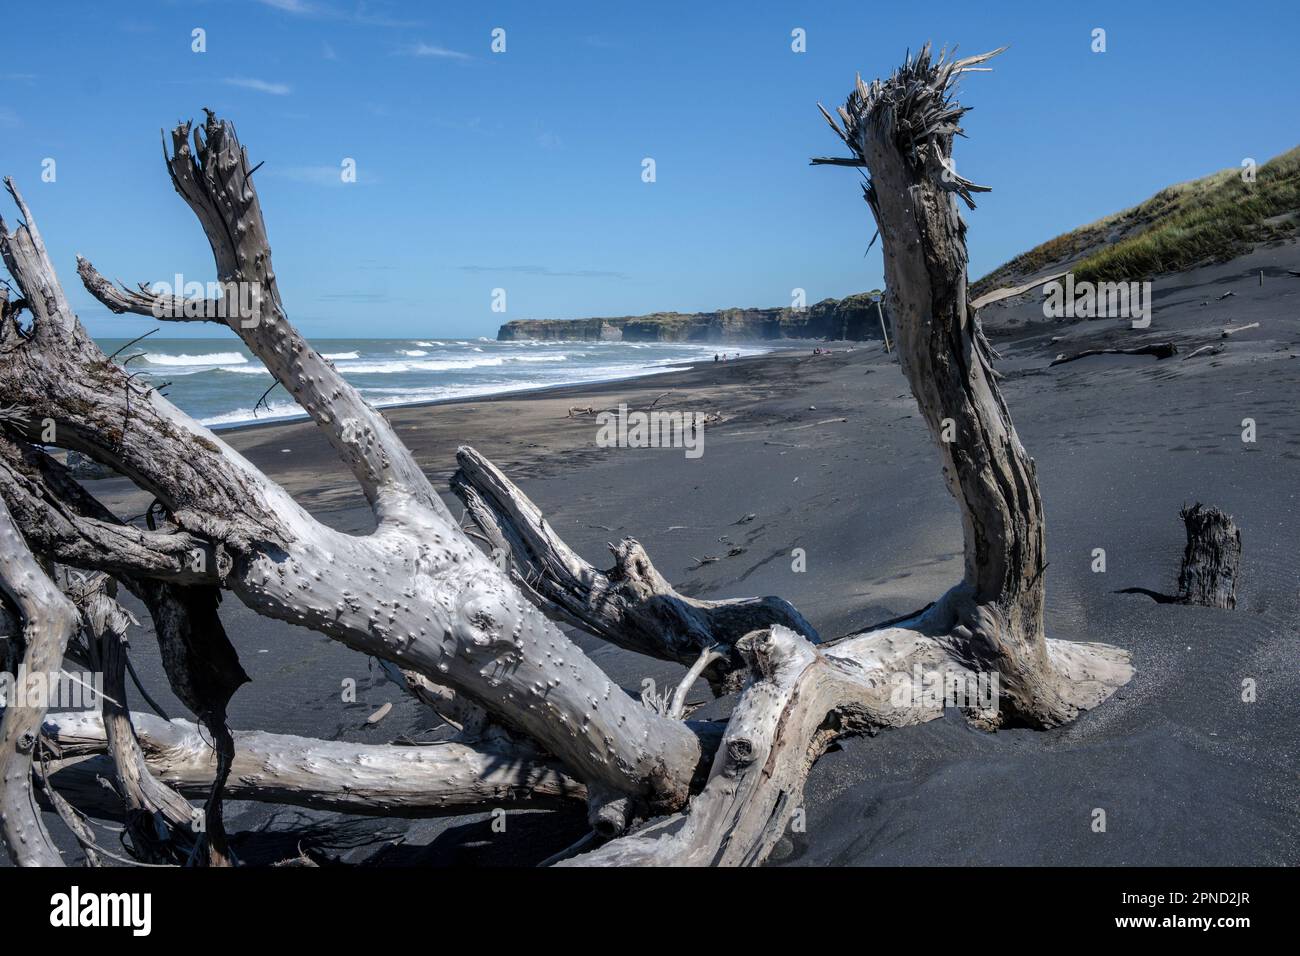 Driftwood on the black sand beach at Patea Bay, Patea, Taranaki Region, North Island, New Zealand Stock Photo